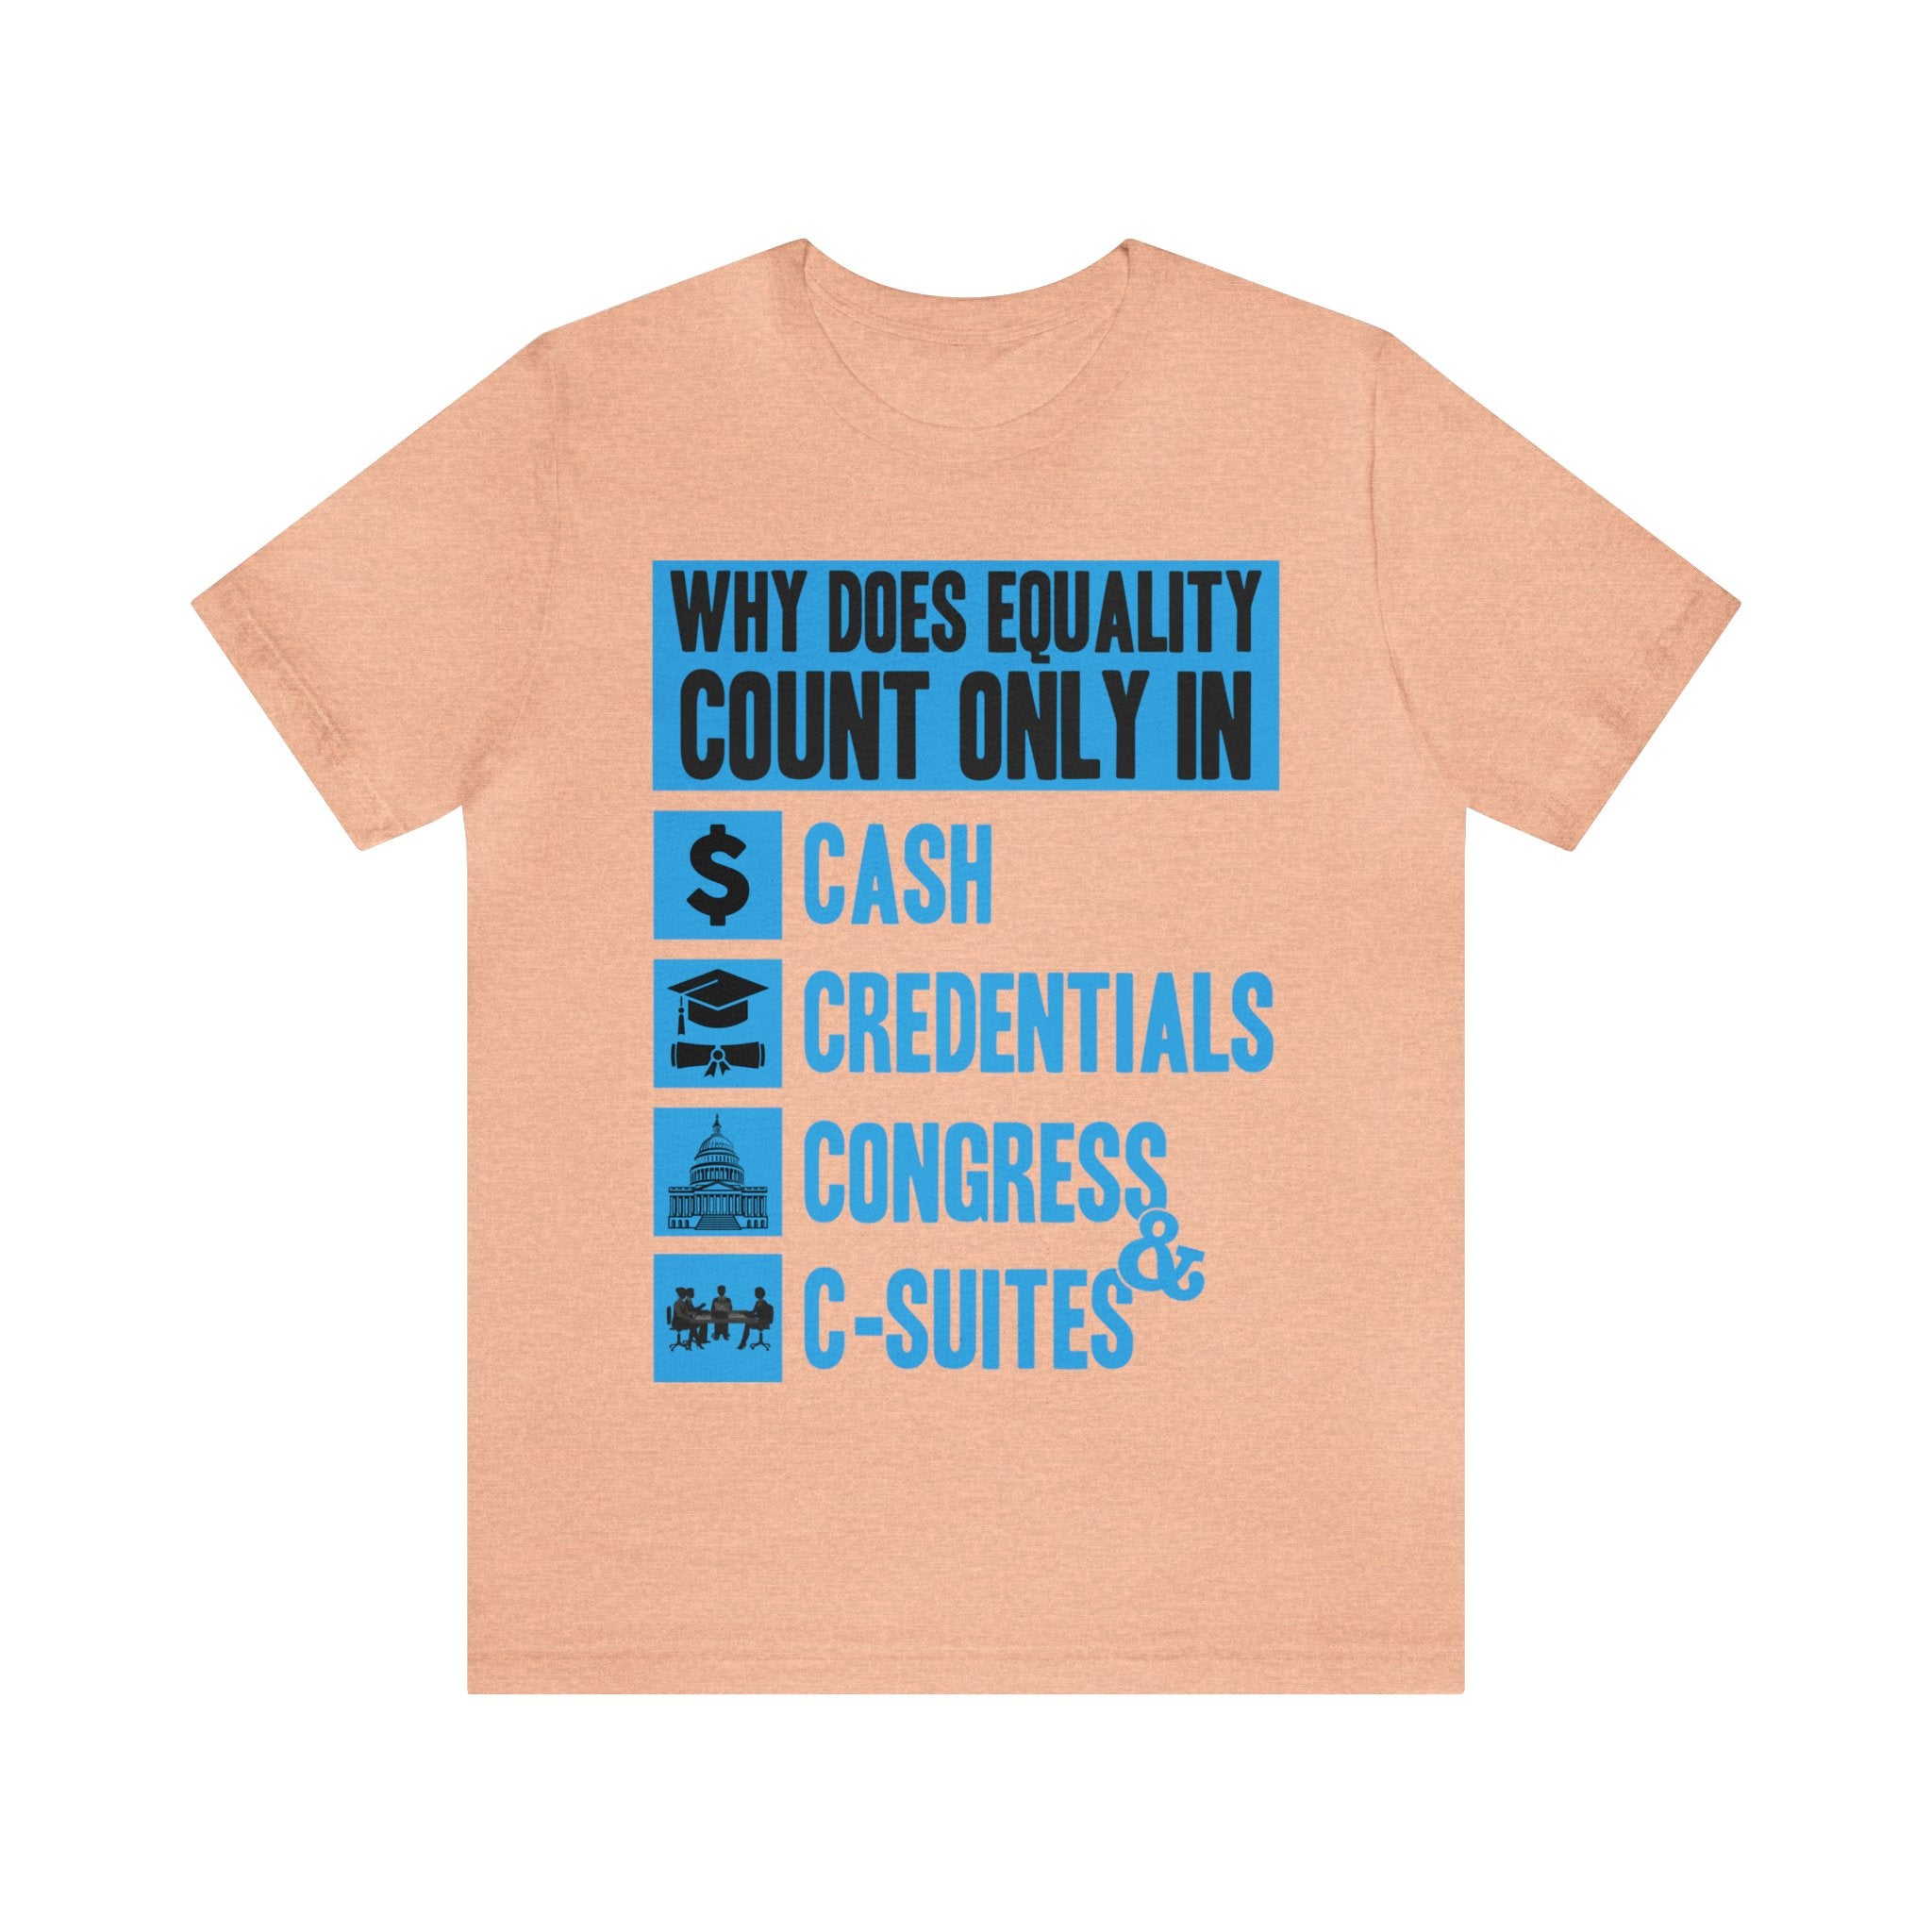 Cash Credentials Congress & C-suites - Blue